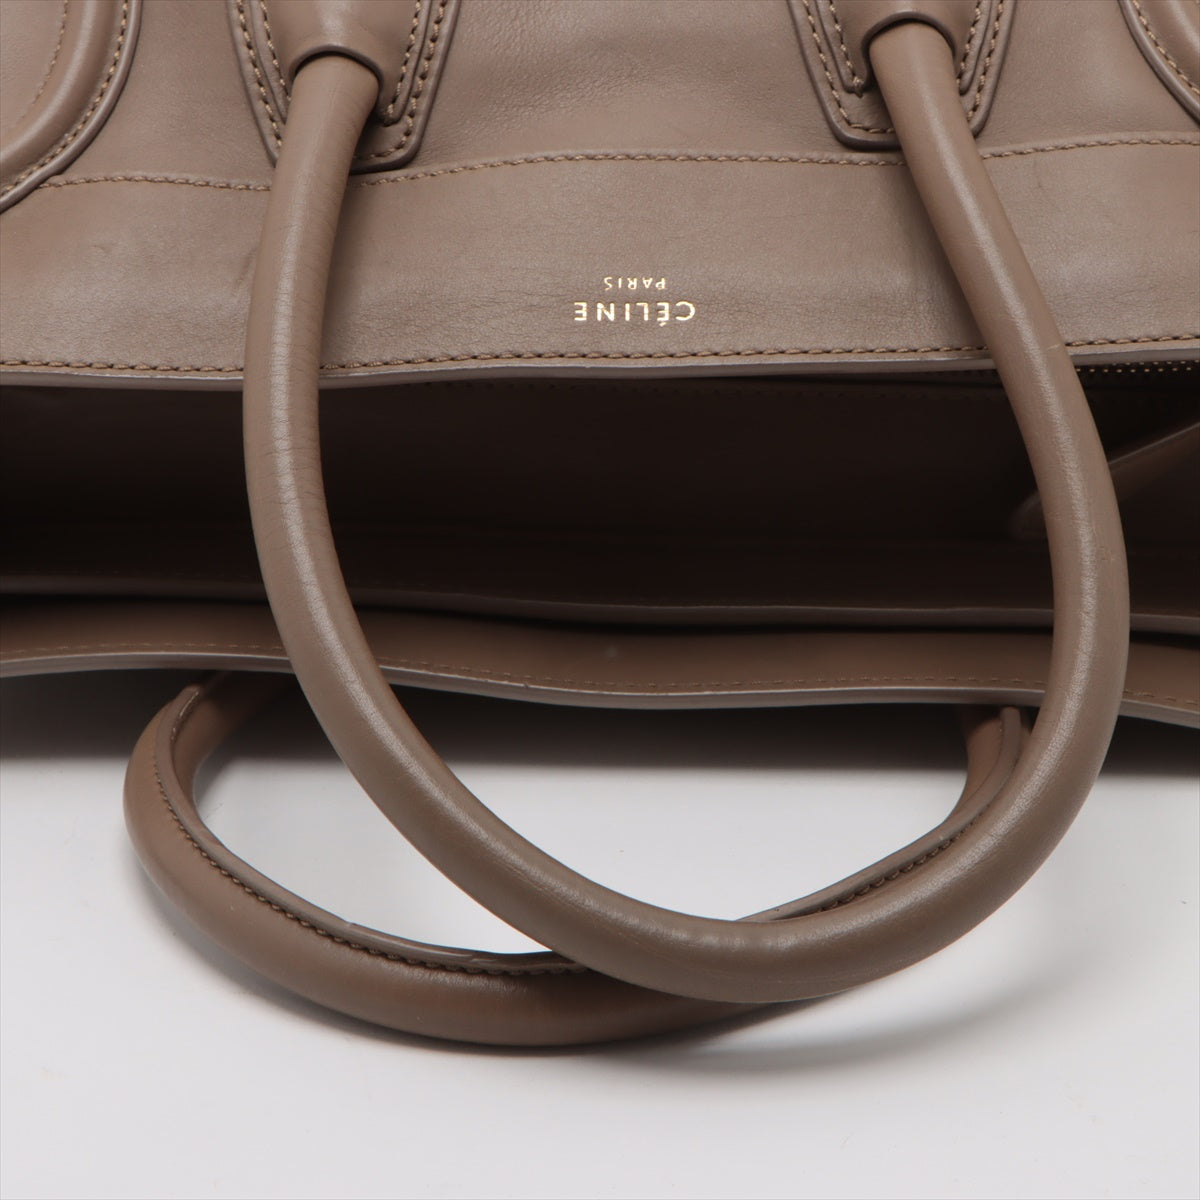 Celine Luggage Mini per Leather Handbag Beige Lagoon